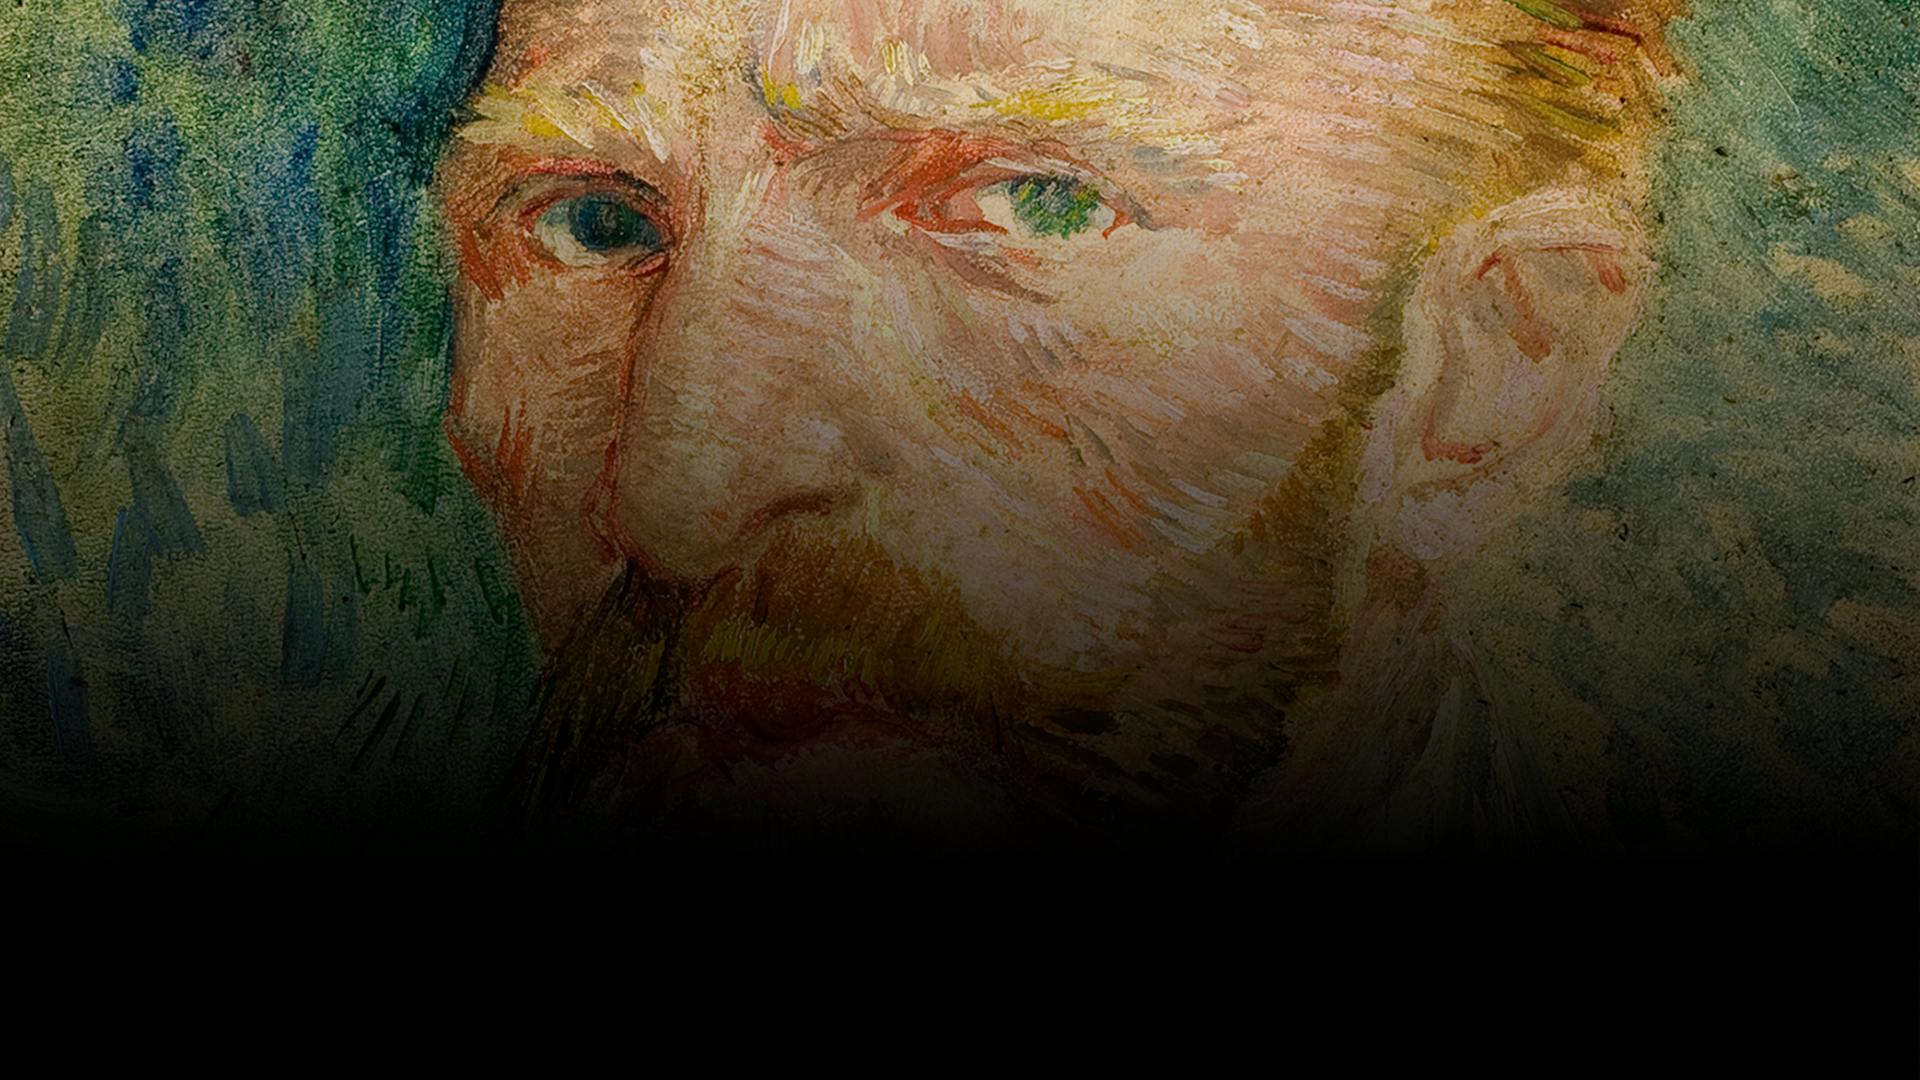 Understanding Vincent van Gogh